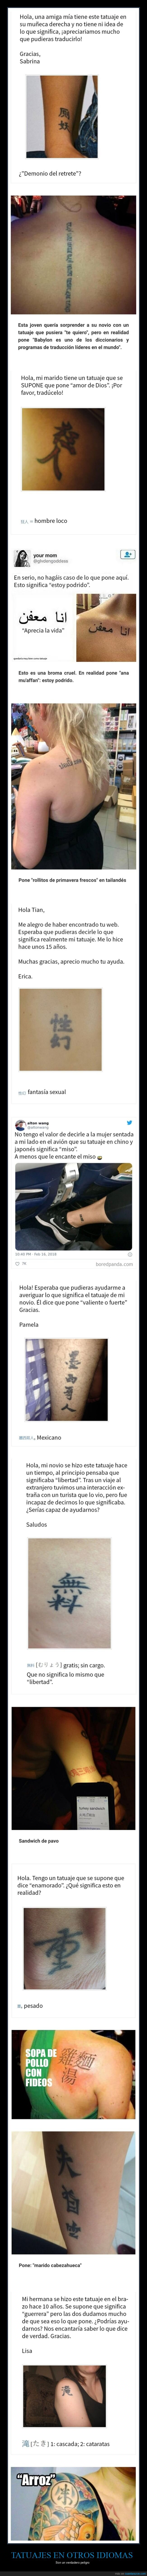 tatuajes,idiomas,fails